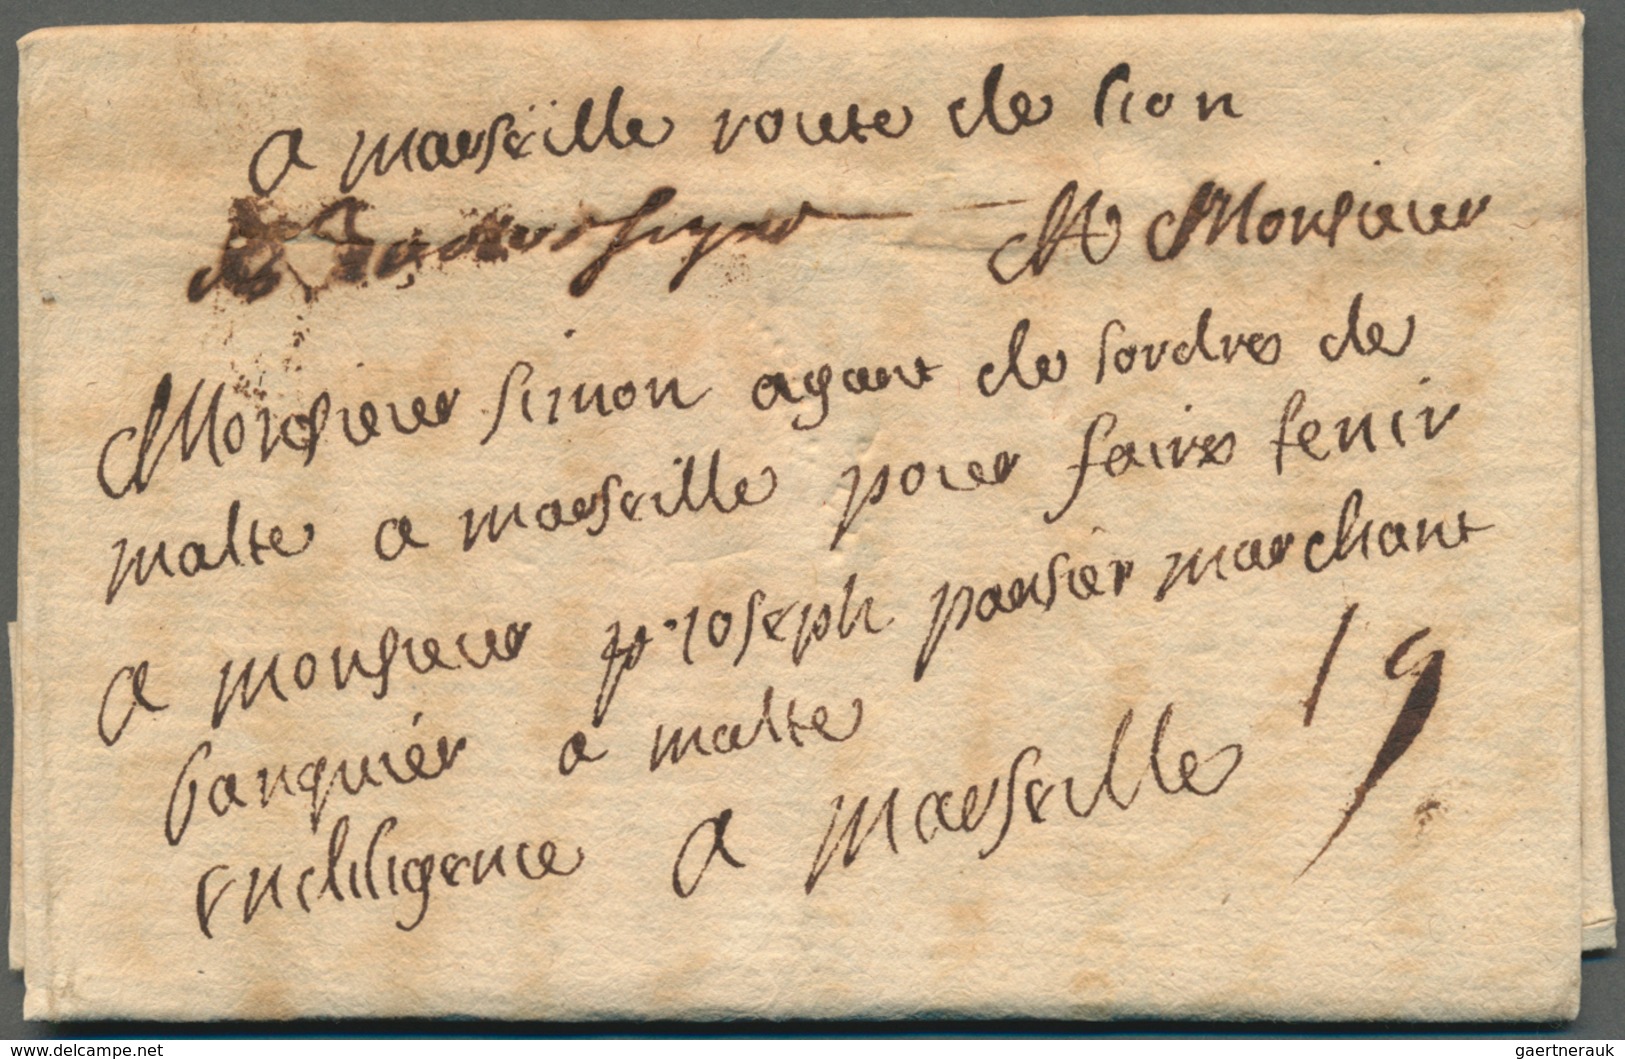 Malta - Vorphilatelie: 1719, Entire Letter From France To The Orders' Banker Joseph Pausier, Reading - Malta